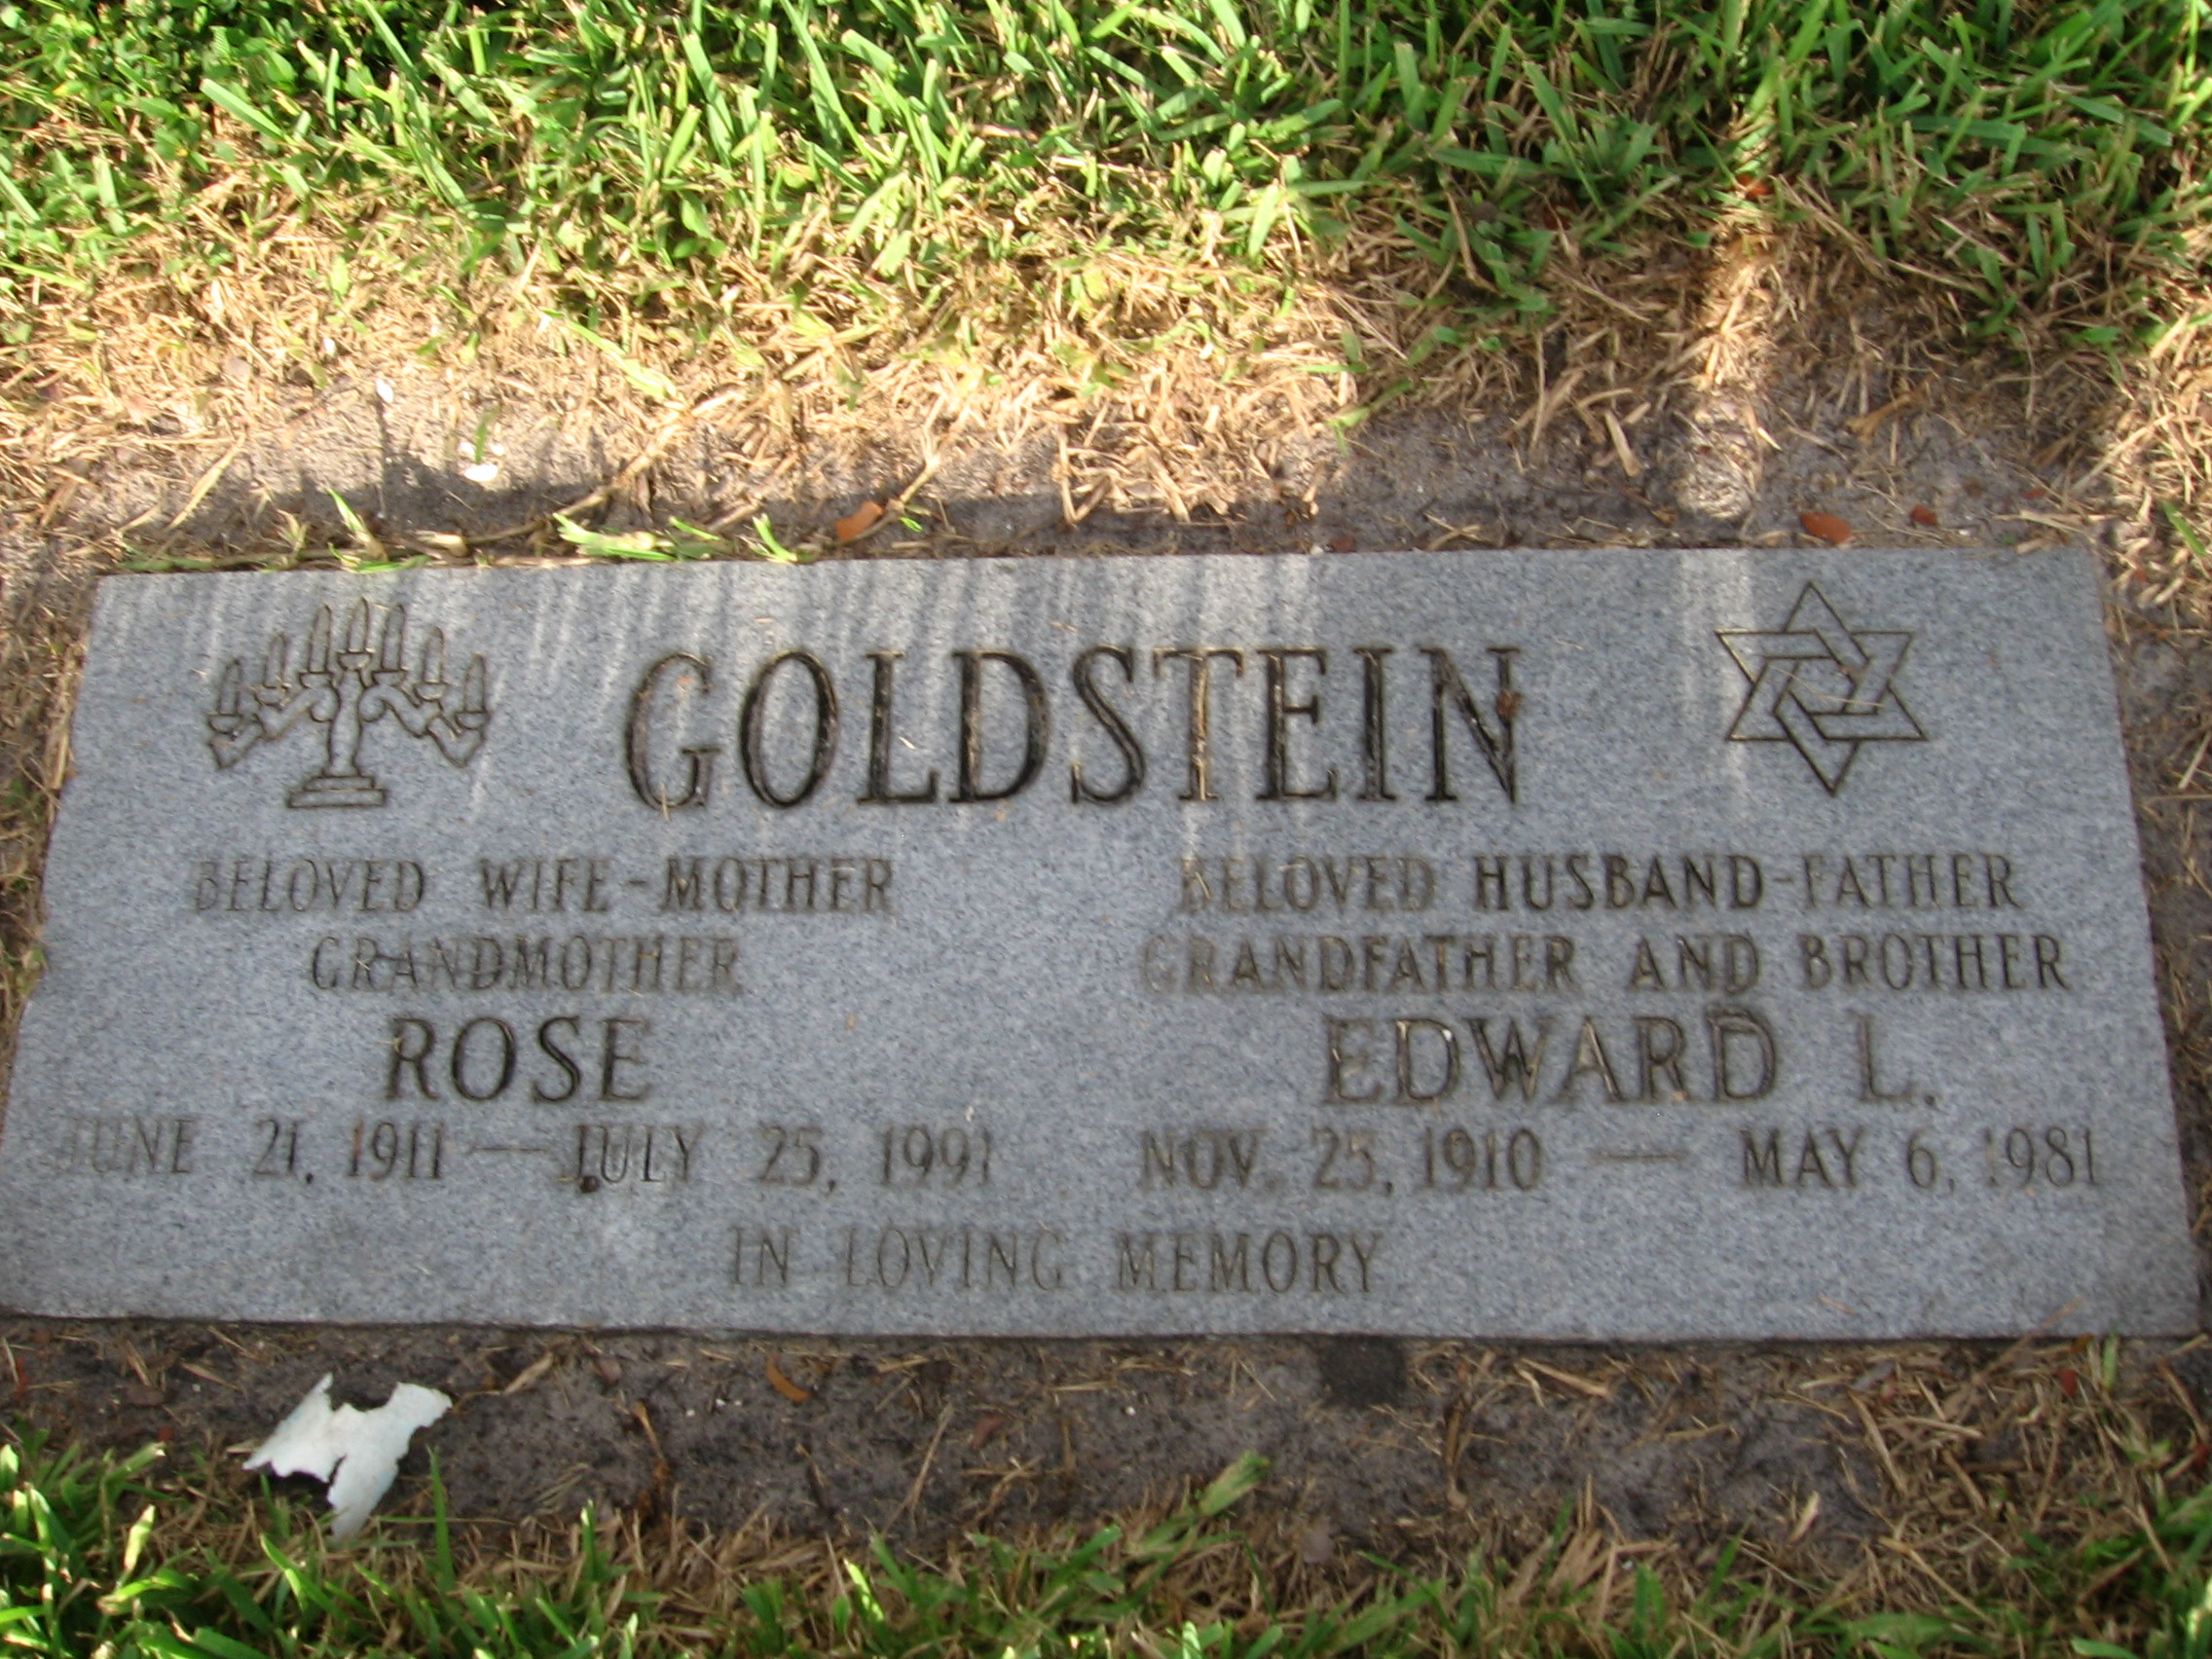 Rose Goldstein